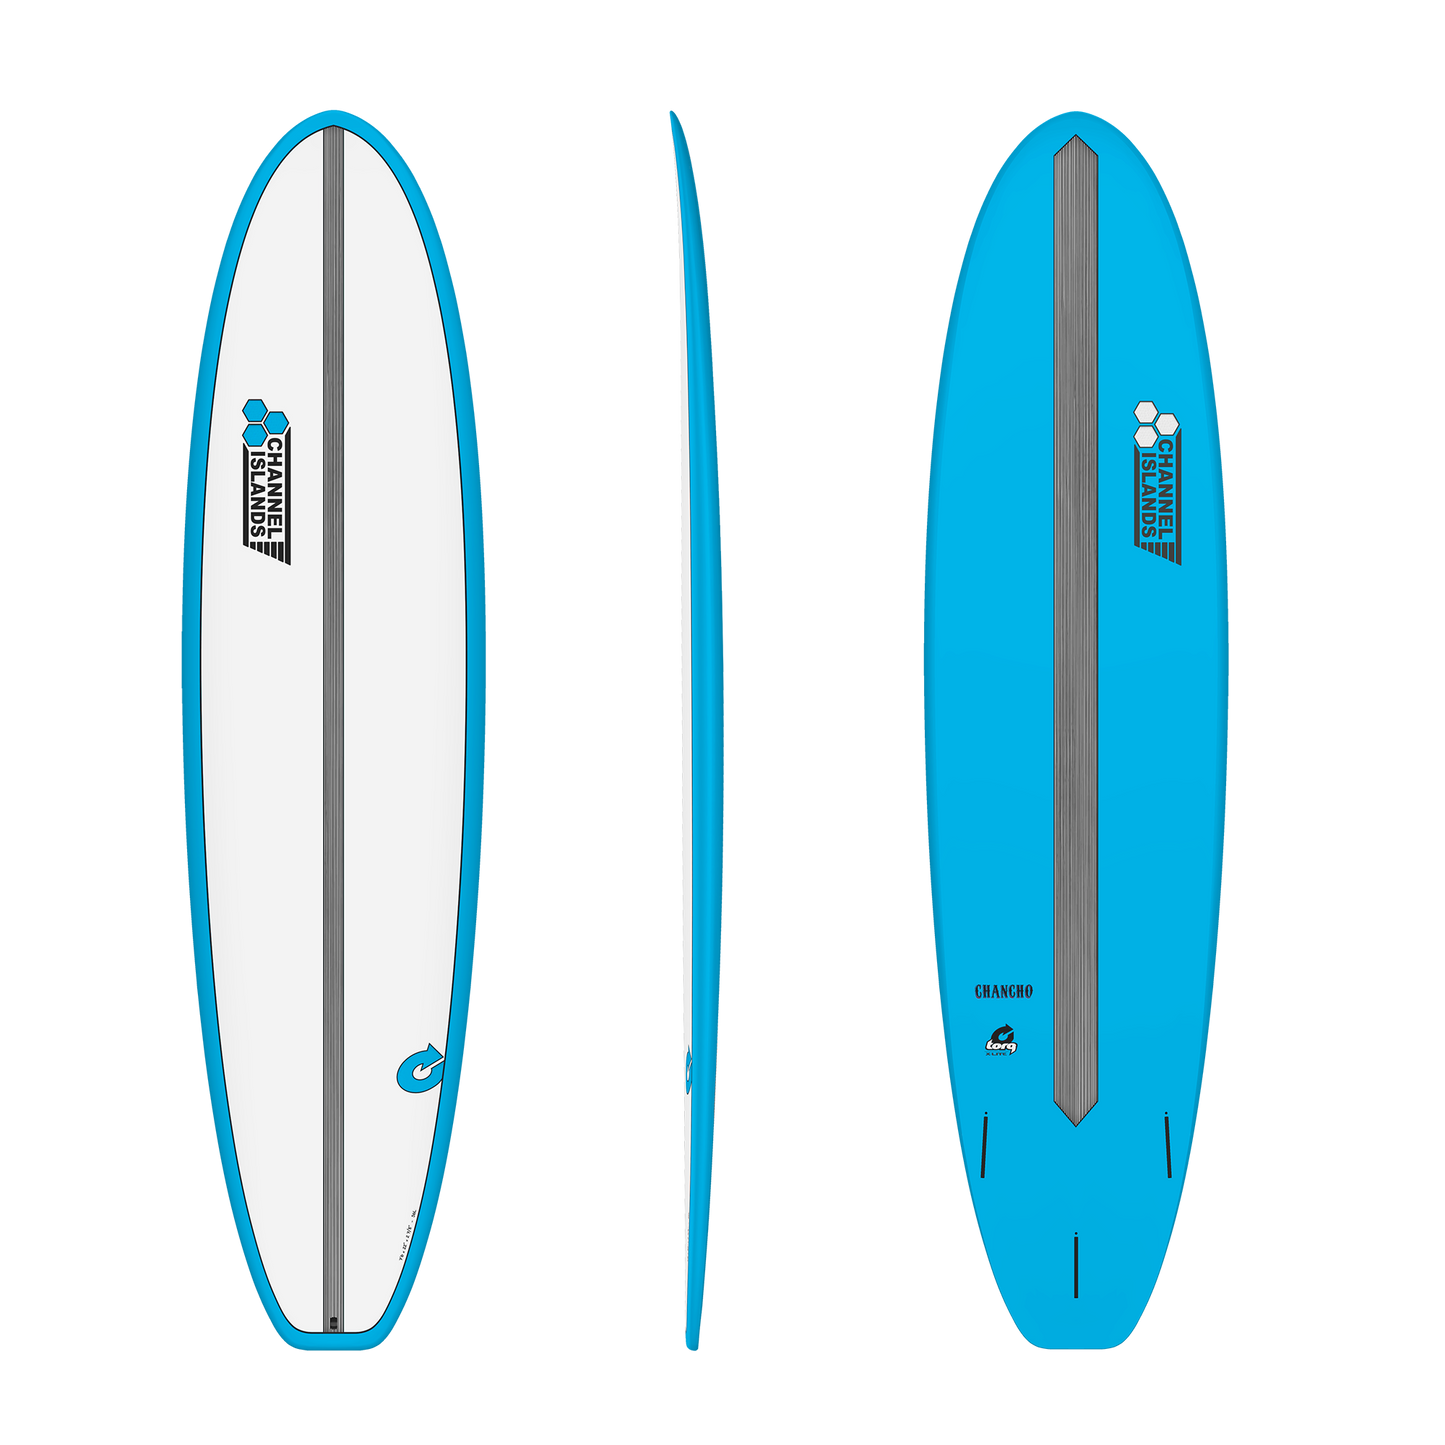 Channel Islands 7'6" Al Merrick Chancho Torq Surfboard - Blue Surfboard